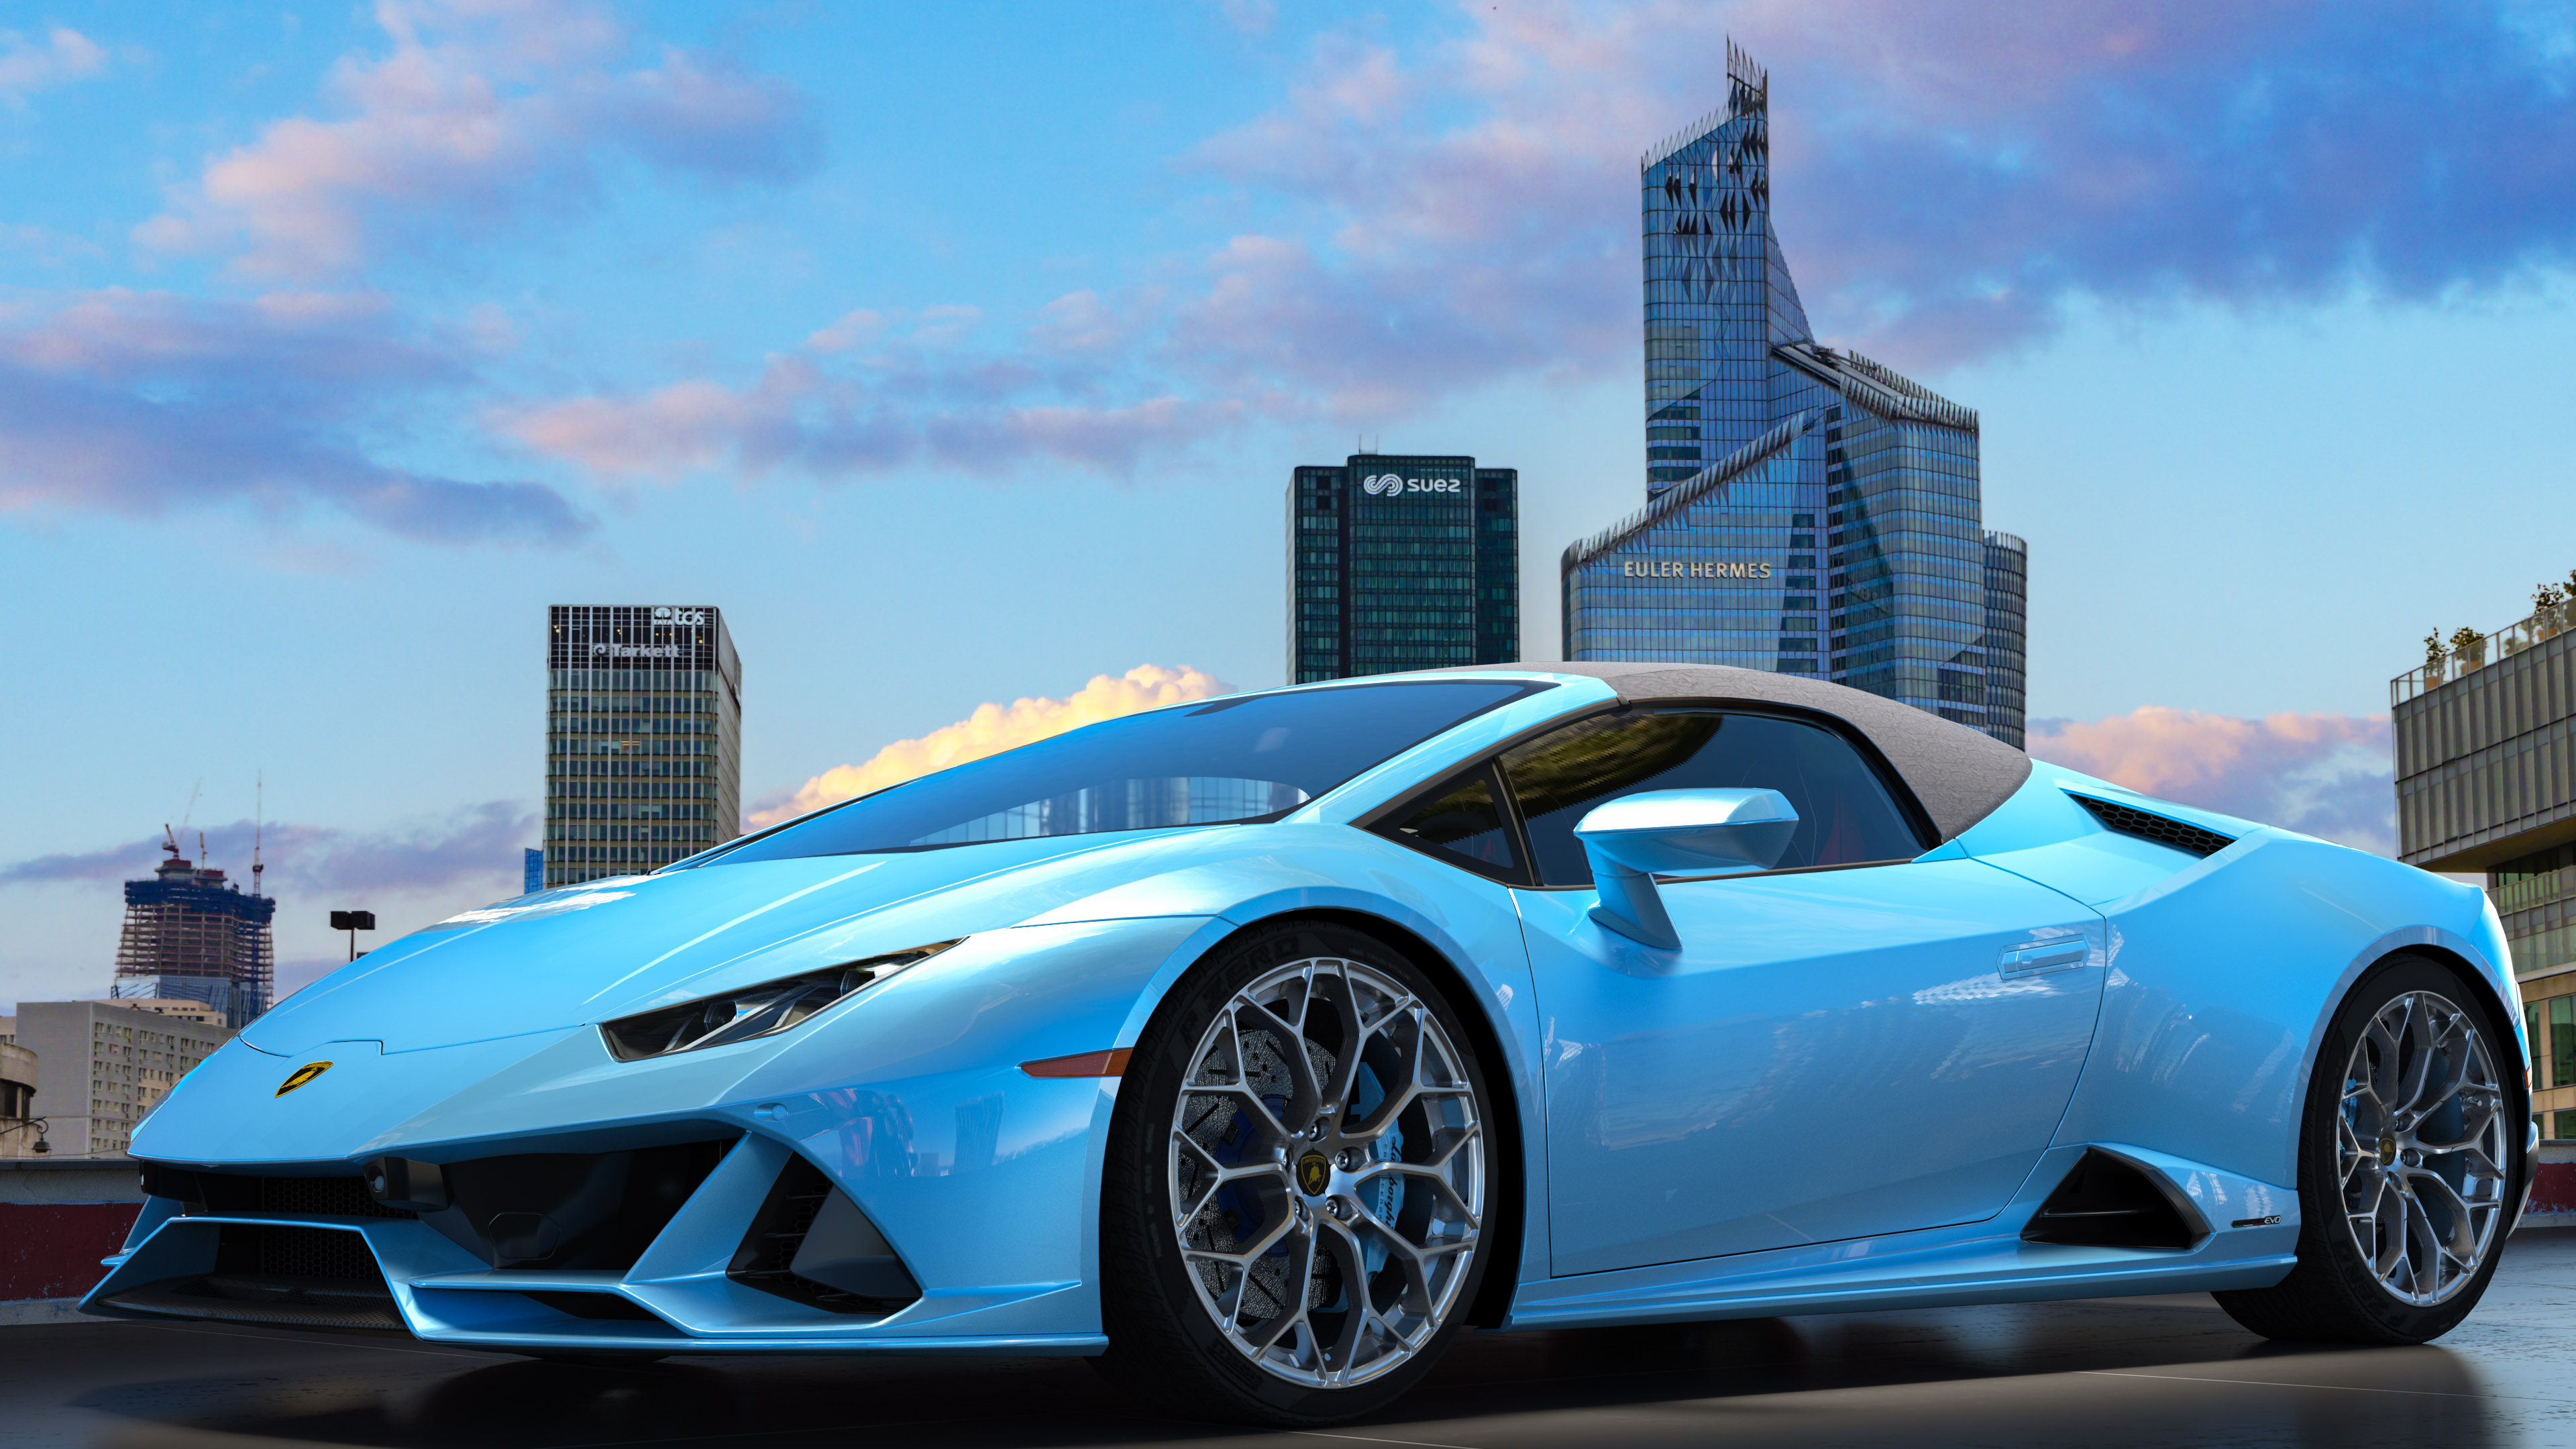 Revigorez l'esthétique de votre appareil avec notre fond d'écran en 4K mettant en vedette la Lamborghini Huracan élégante et stylée.